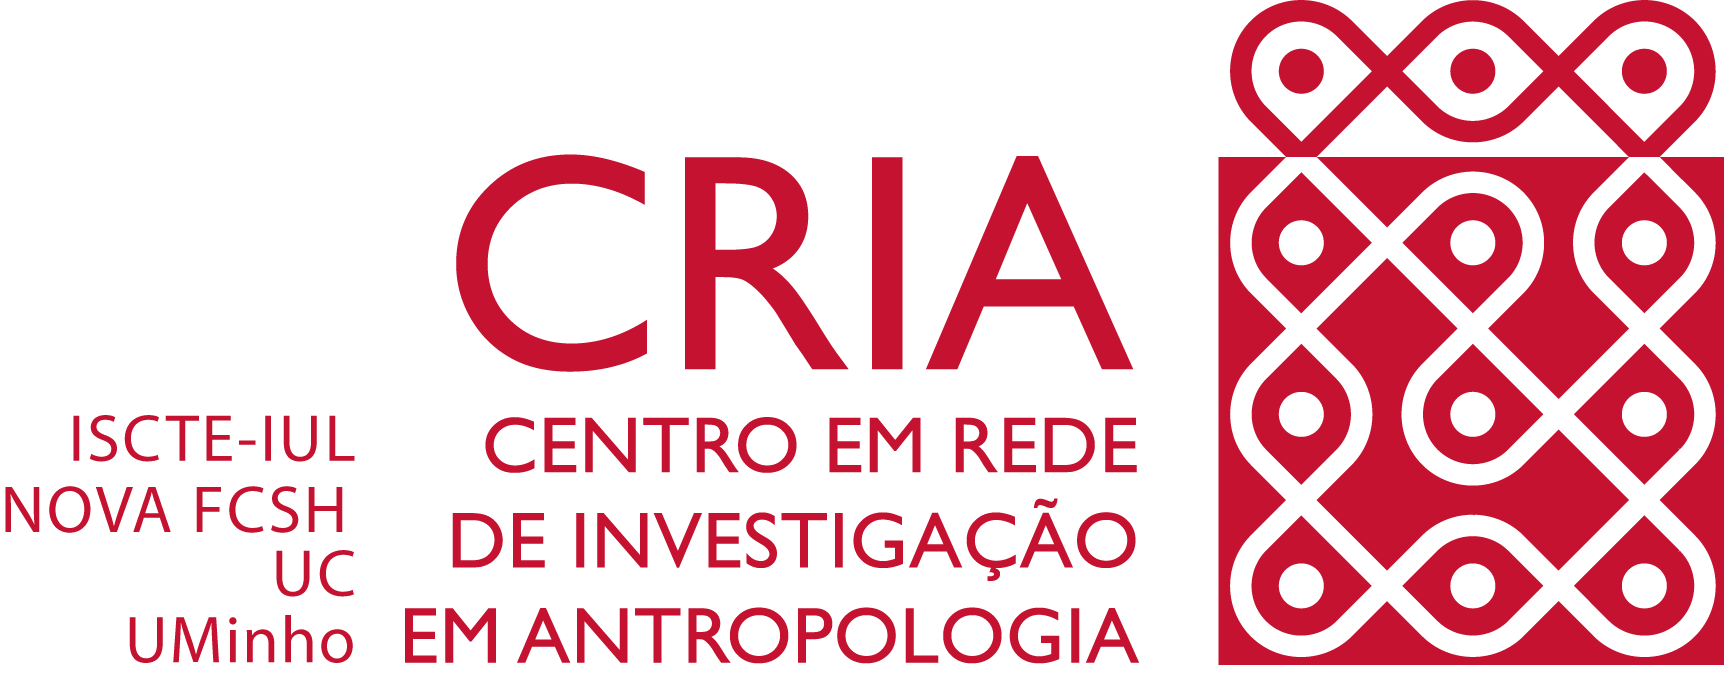 CRIA logo